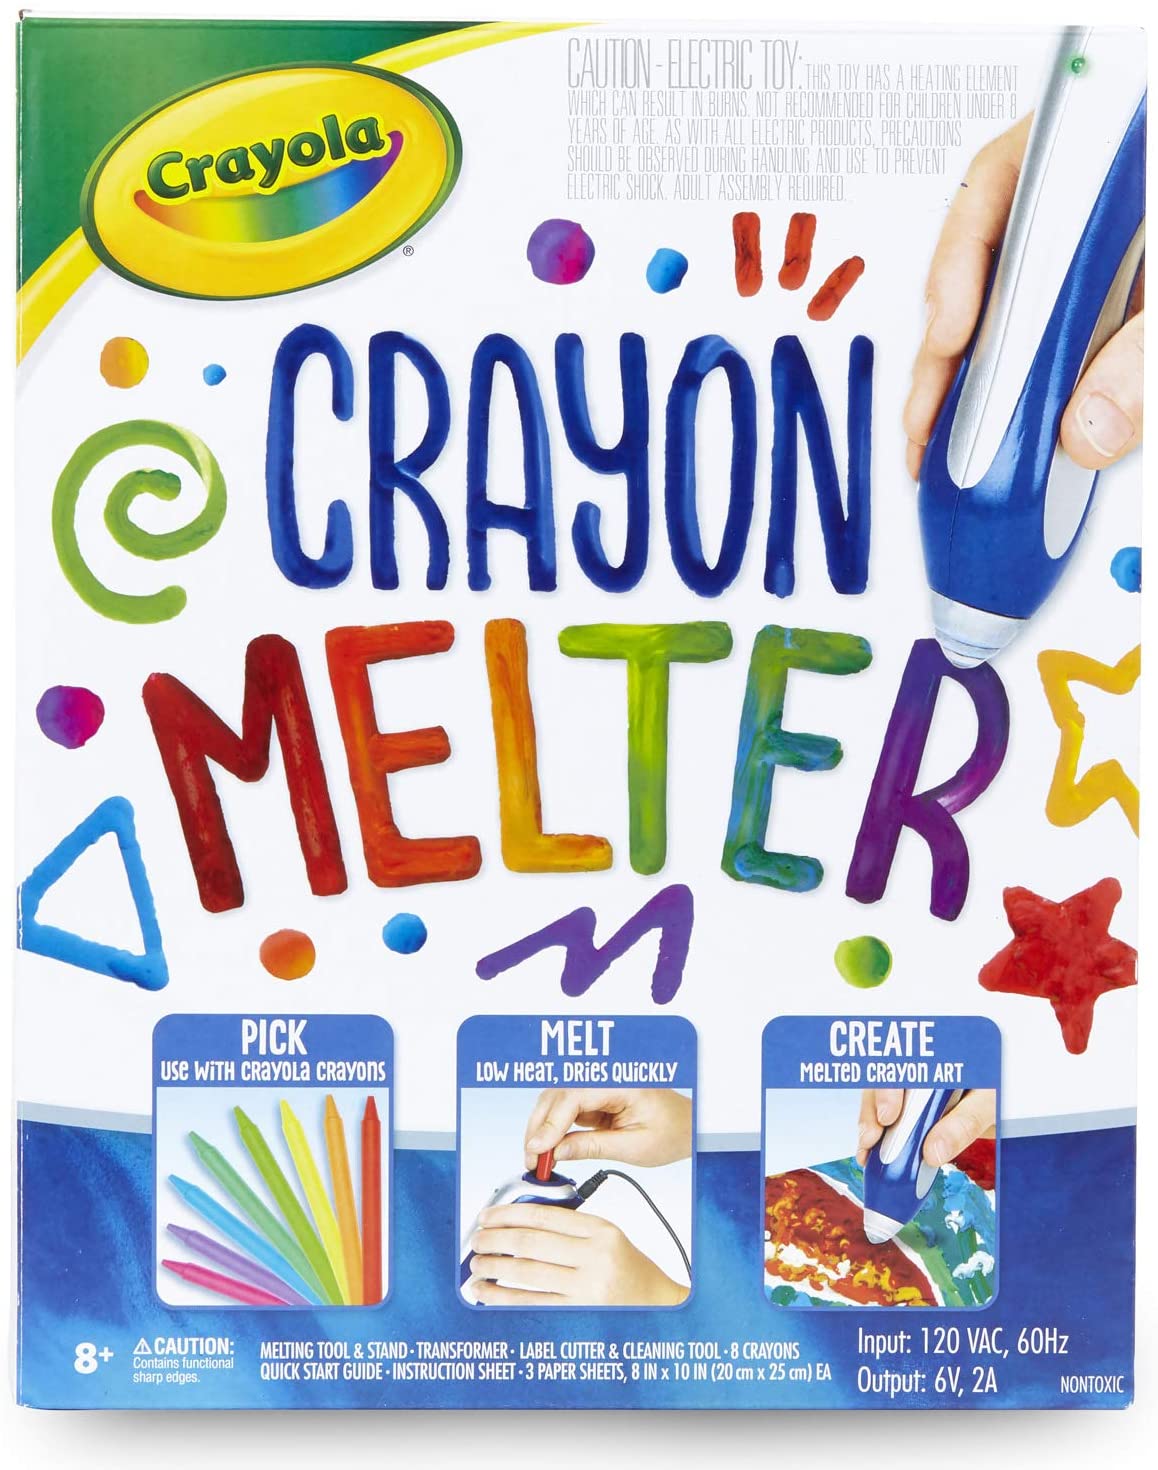 Crayola Age 8 Plus Crayon Melter Kit